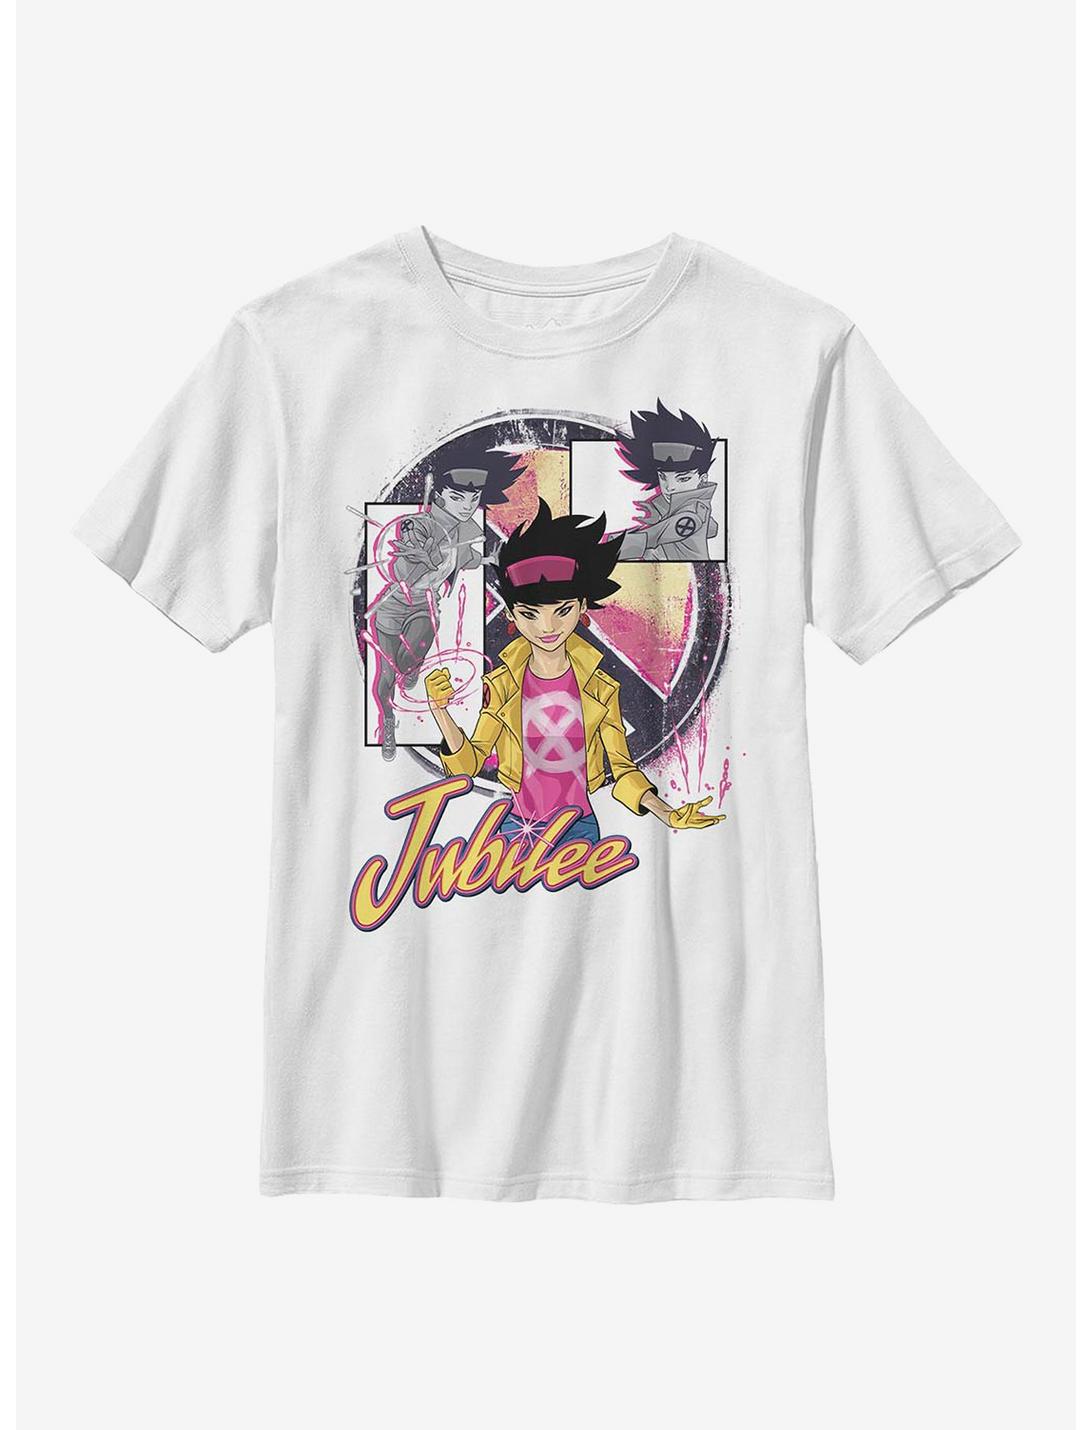 Marvel X-Men Jubilee Panels Youth T-Shirt, WHITE, hi-res